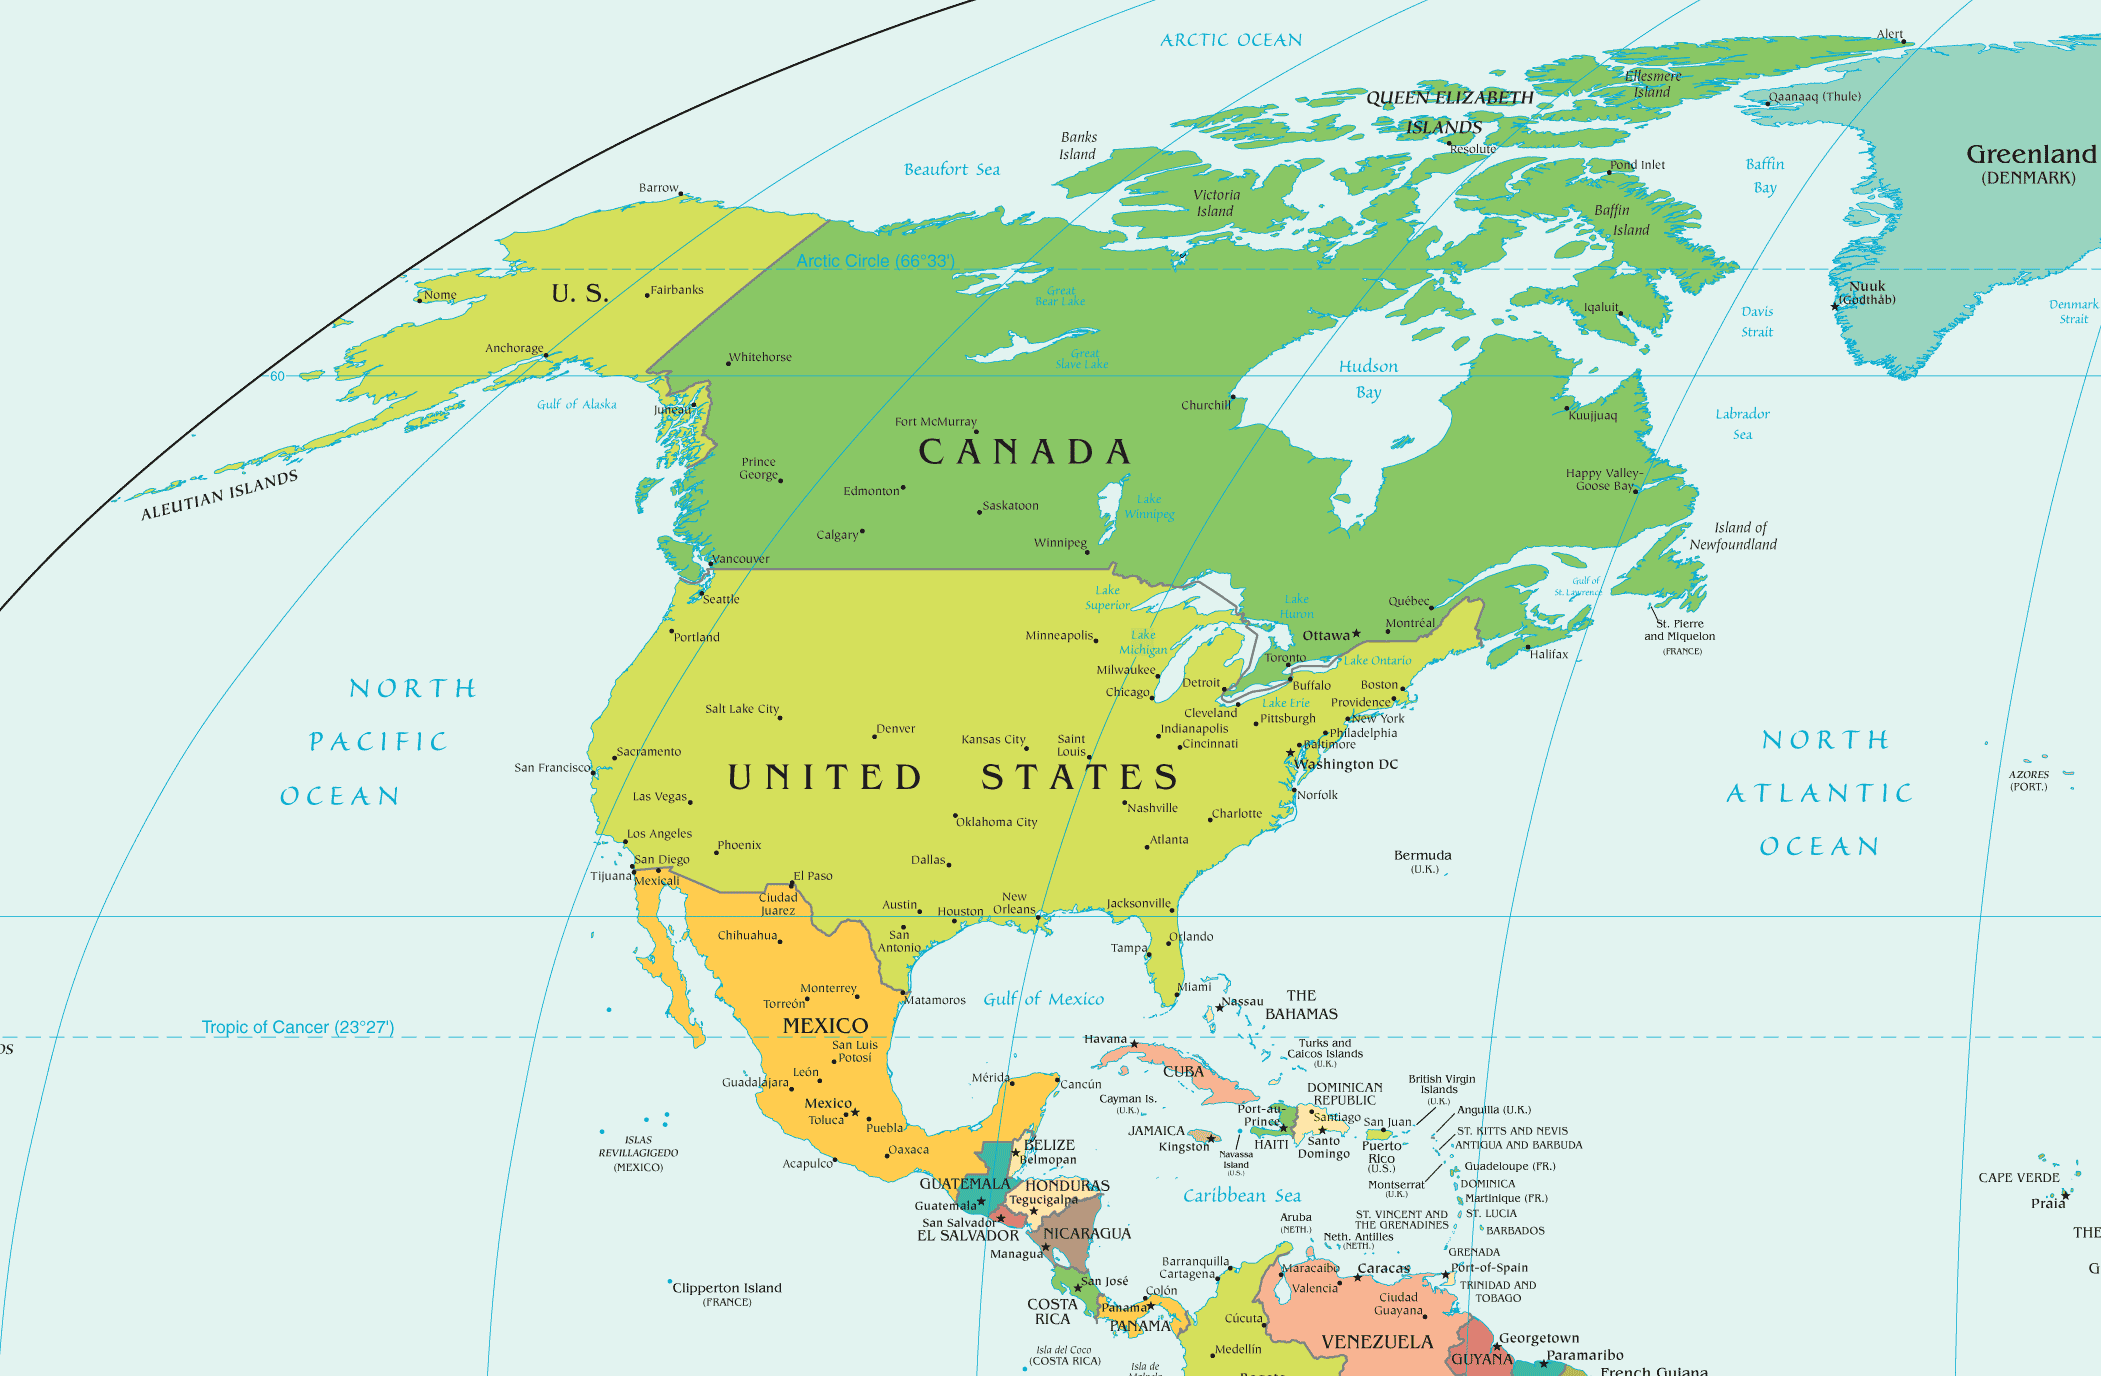 kuzey amerika politik haritasi